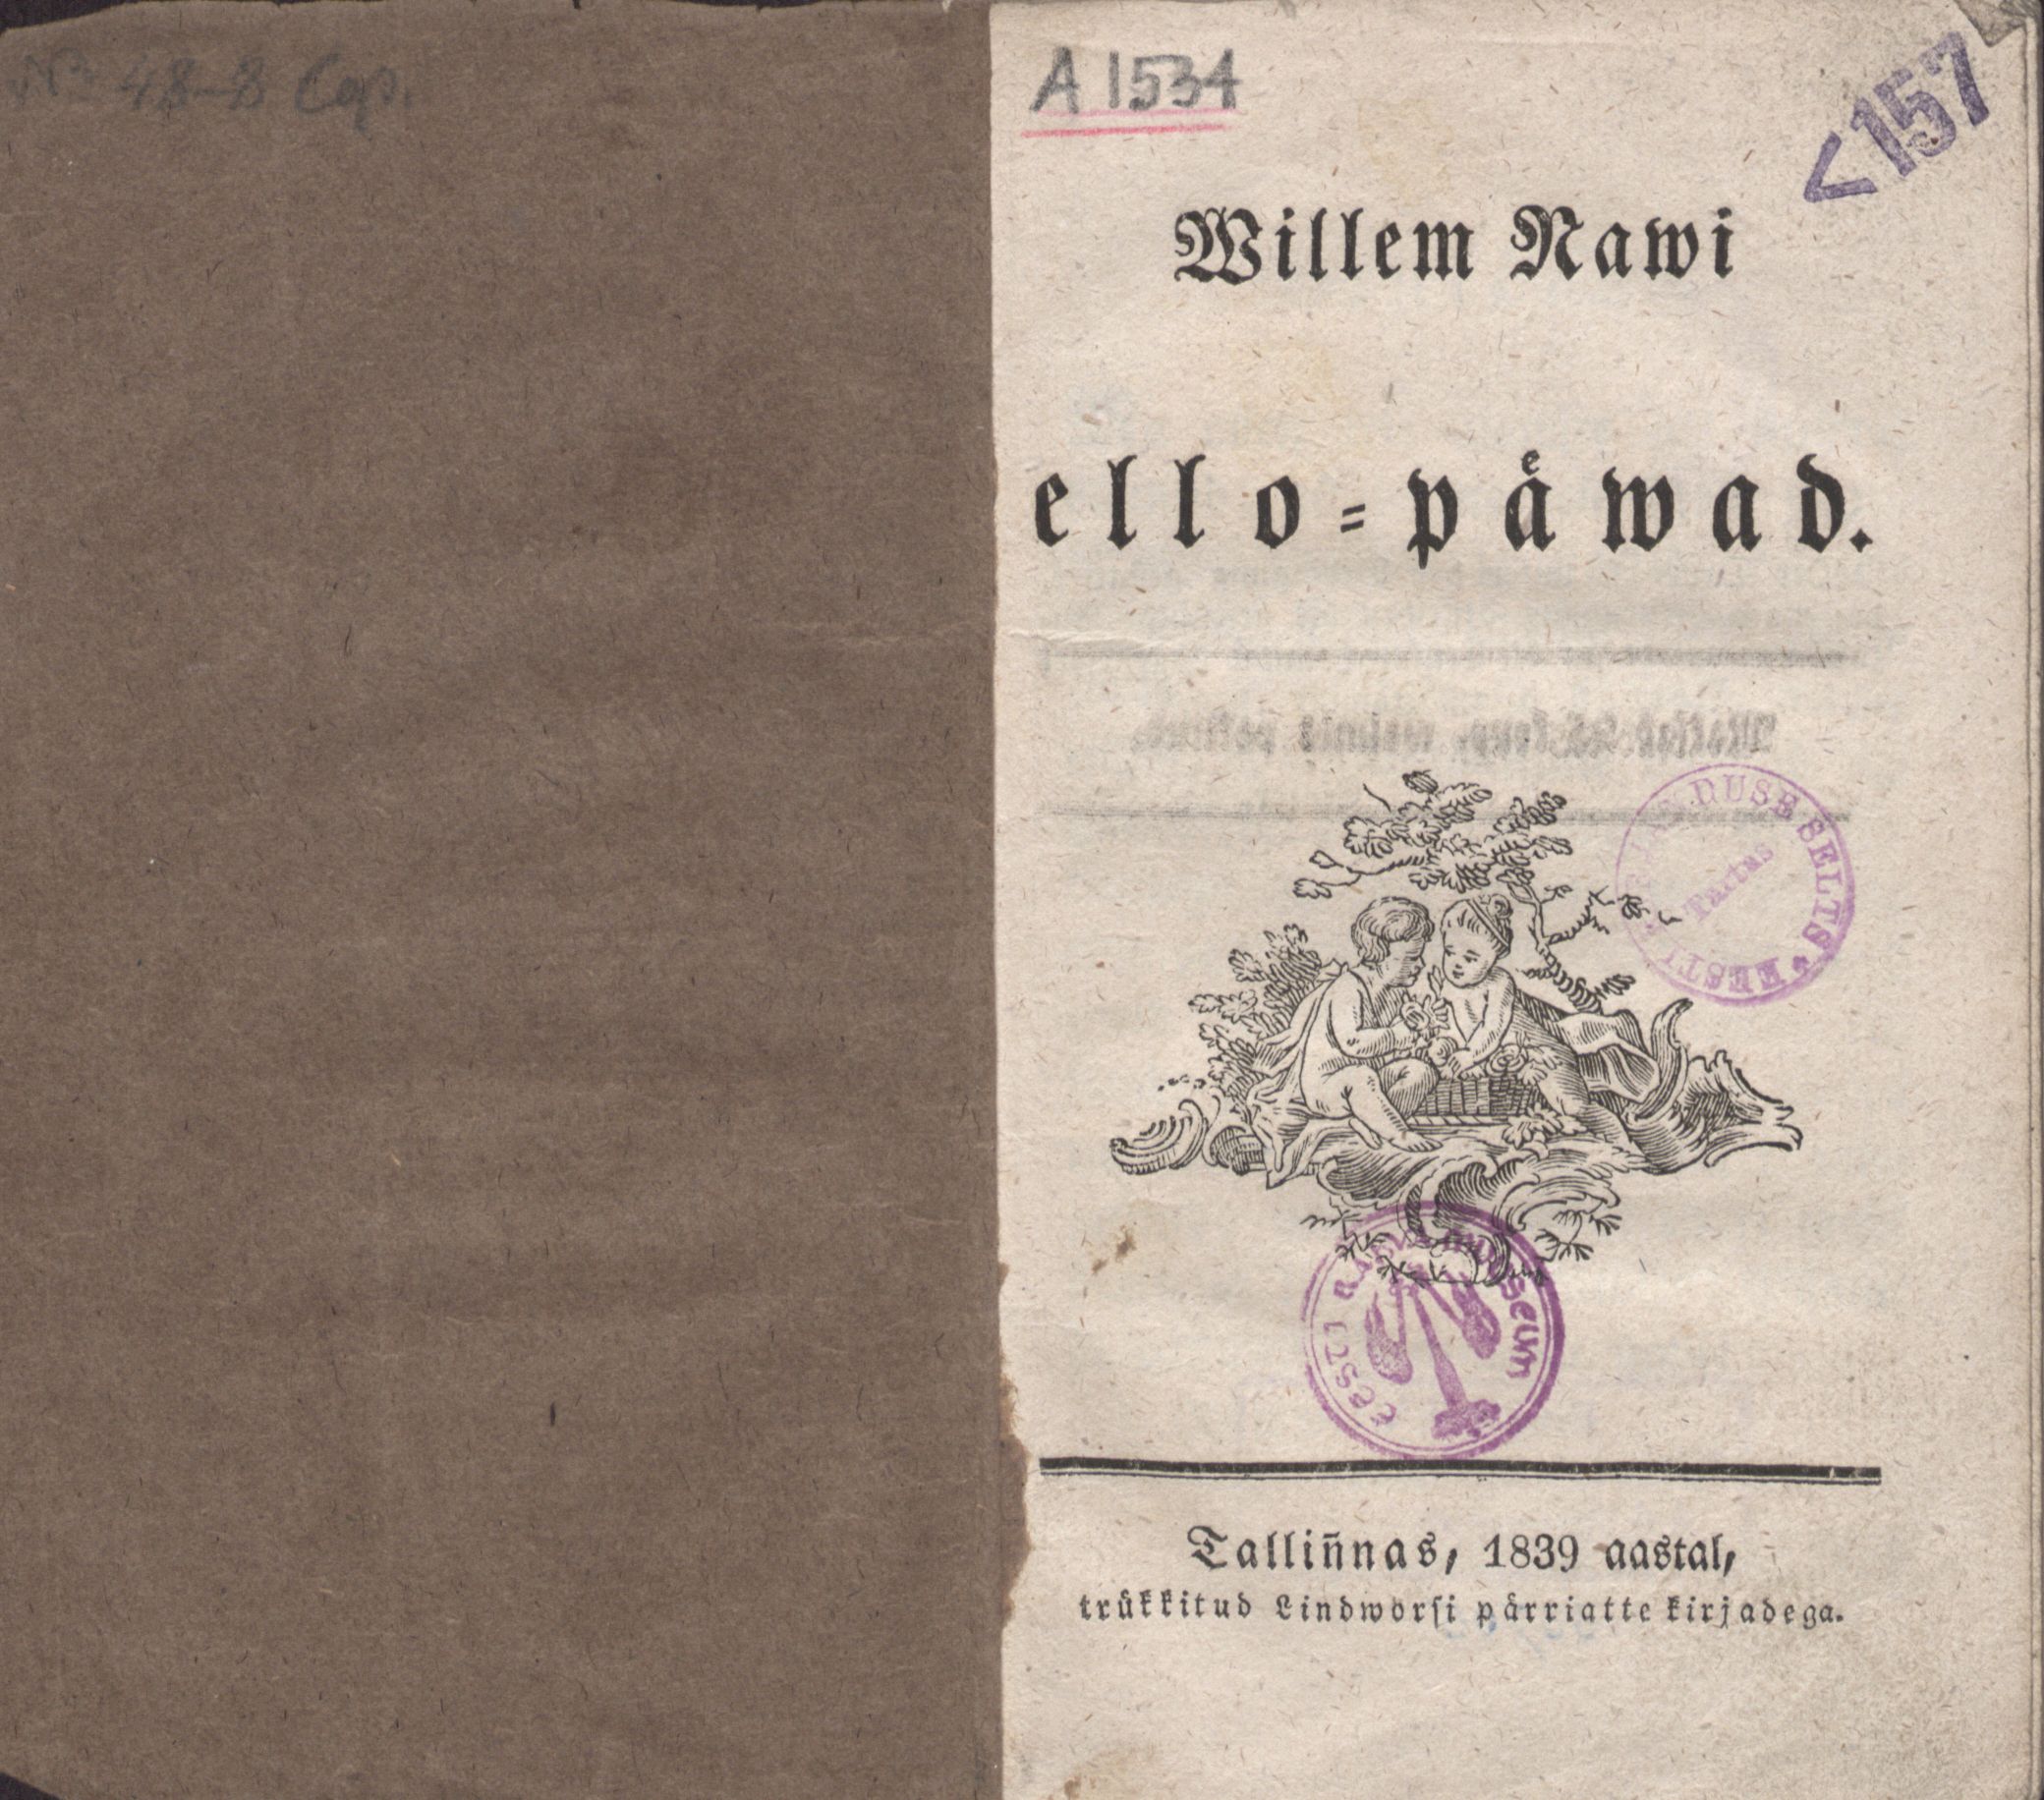 Willem Nawi ello-päwad (1839) | 1. Title page